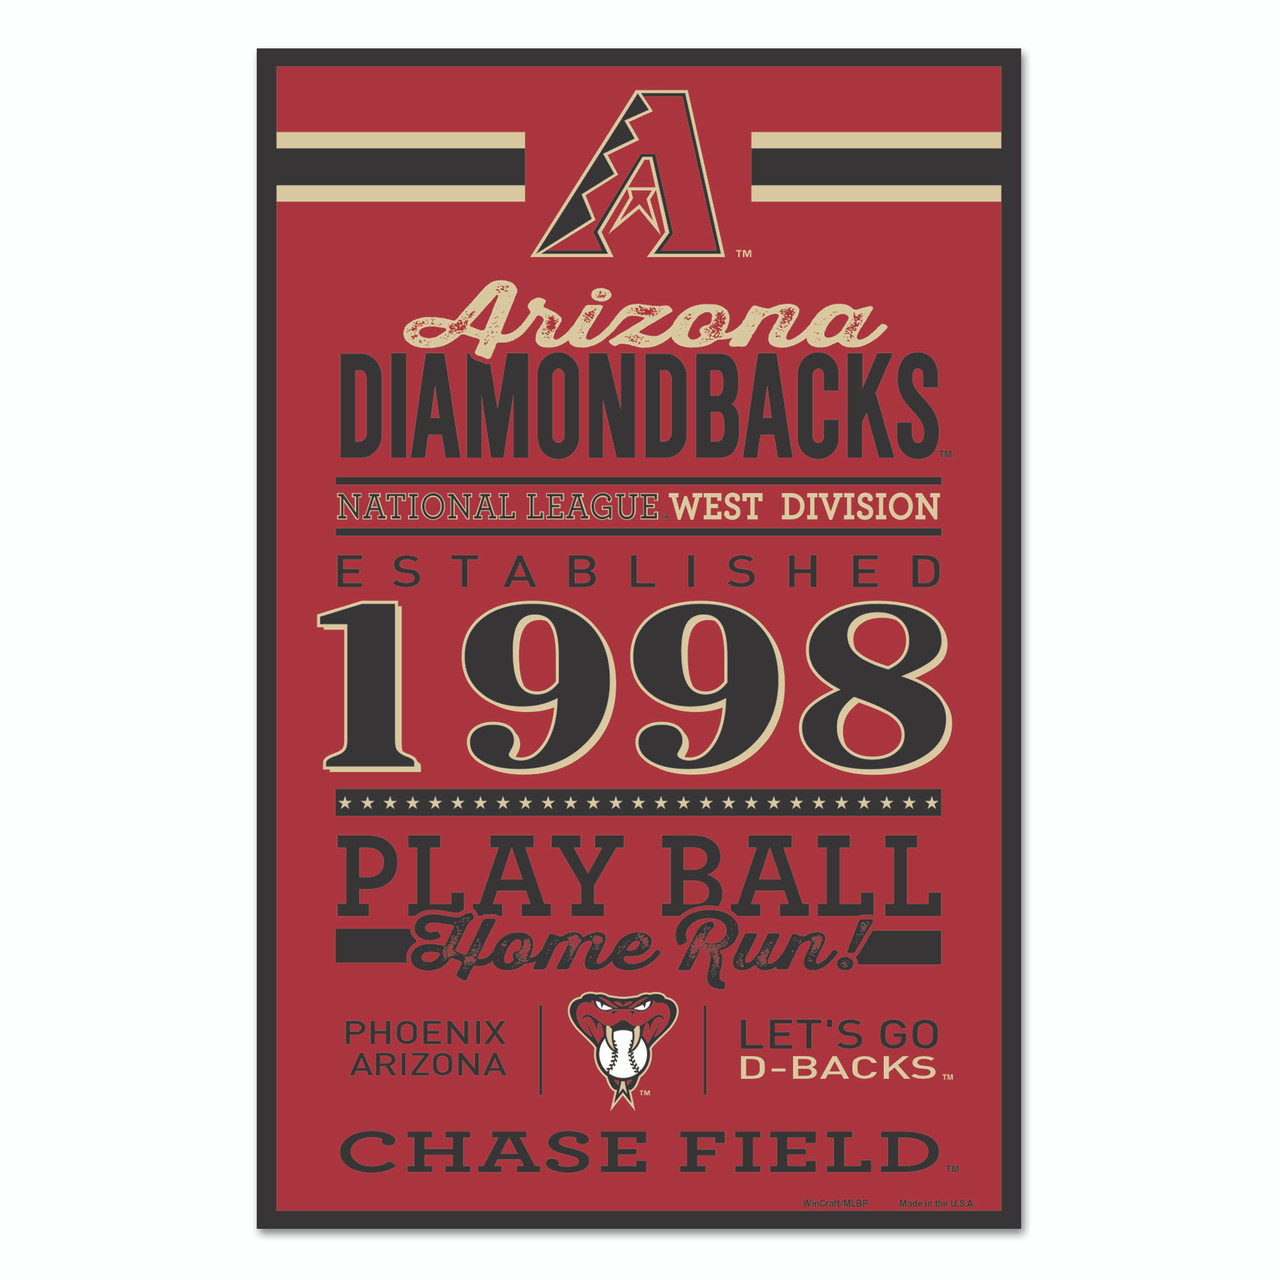 Arizona Diamondbacks [Book]